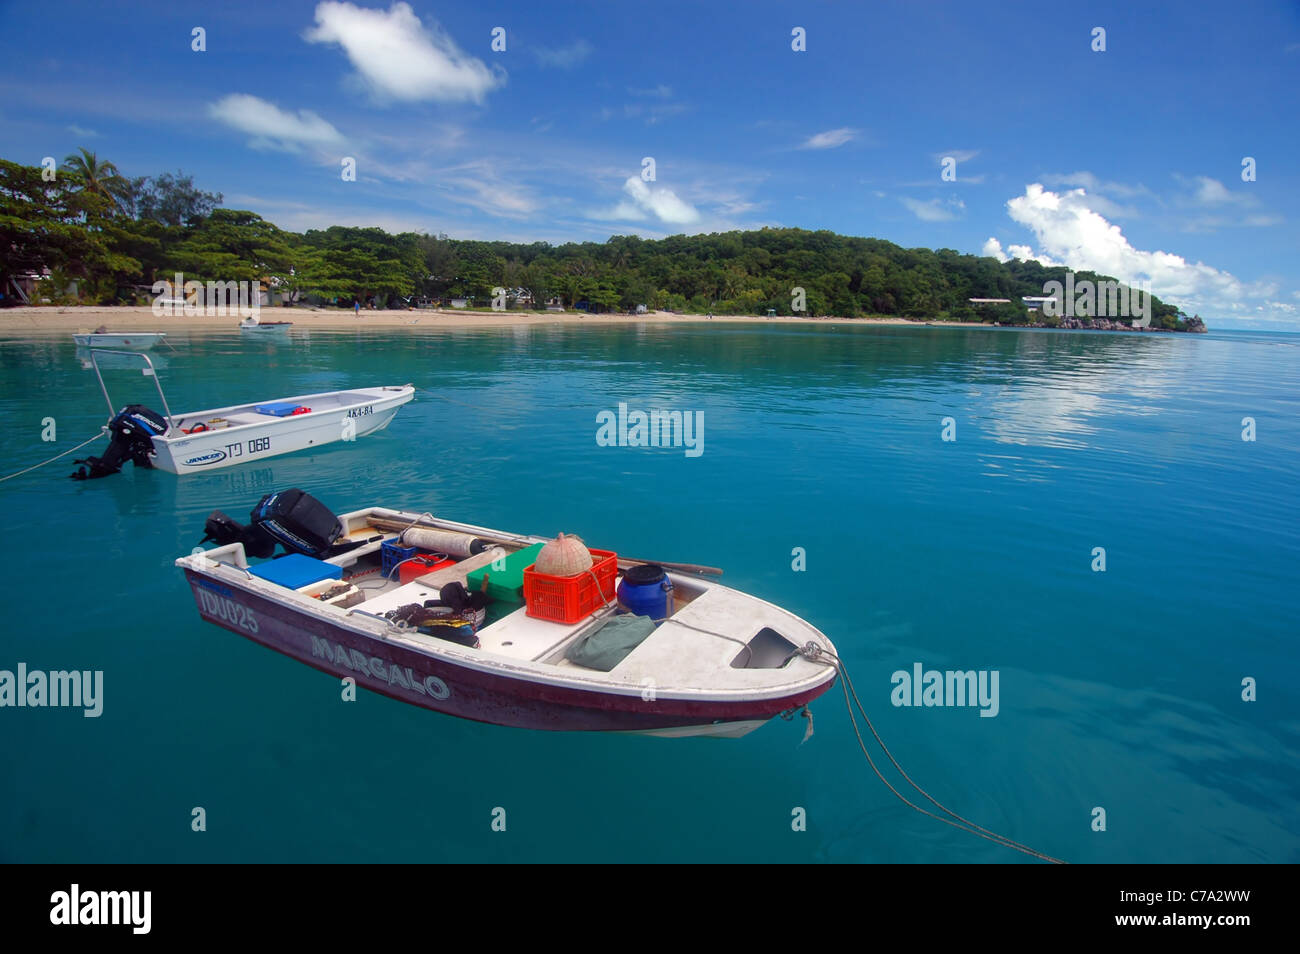 Bateaux, plage et maisons sur l'île de Iama, aka Yam Island, le centre de Torres Strait, Queensland, Australie. Pas de PR Banque D'Images